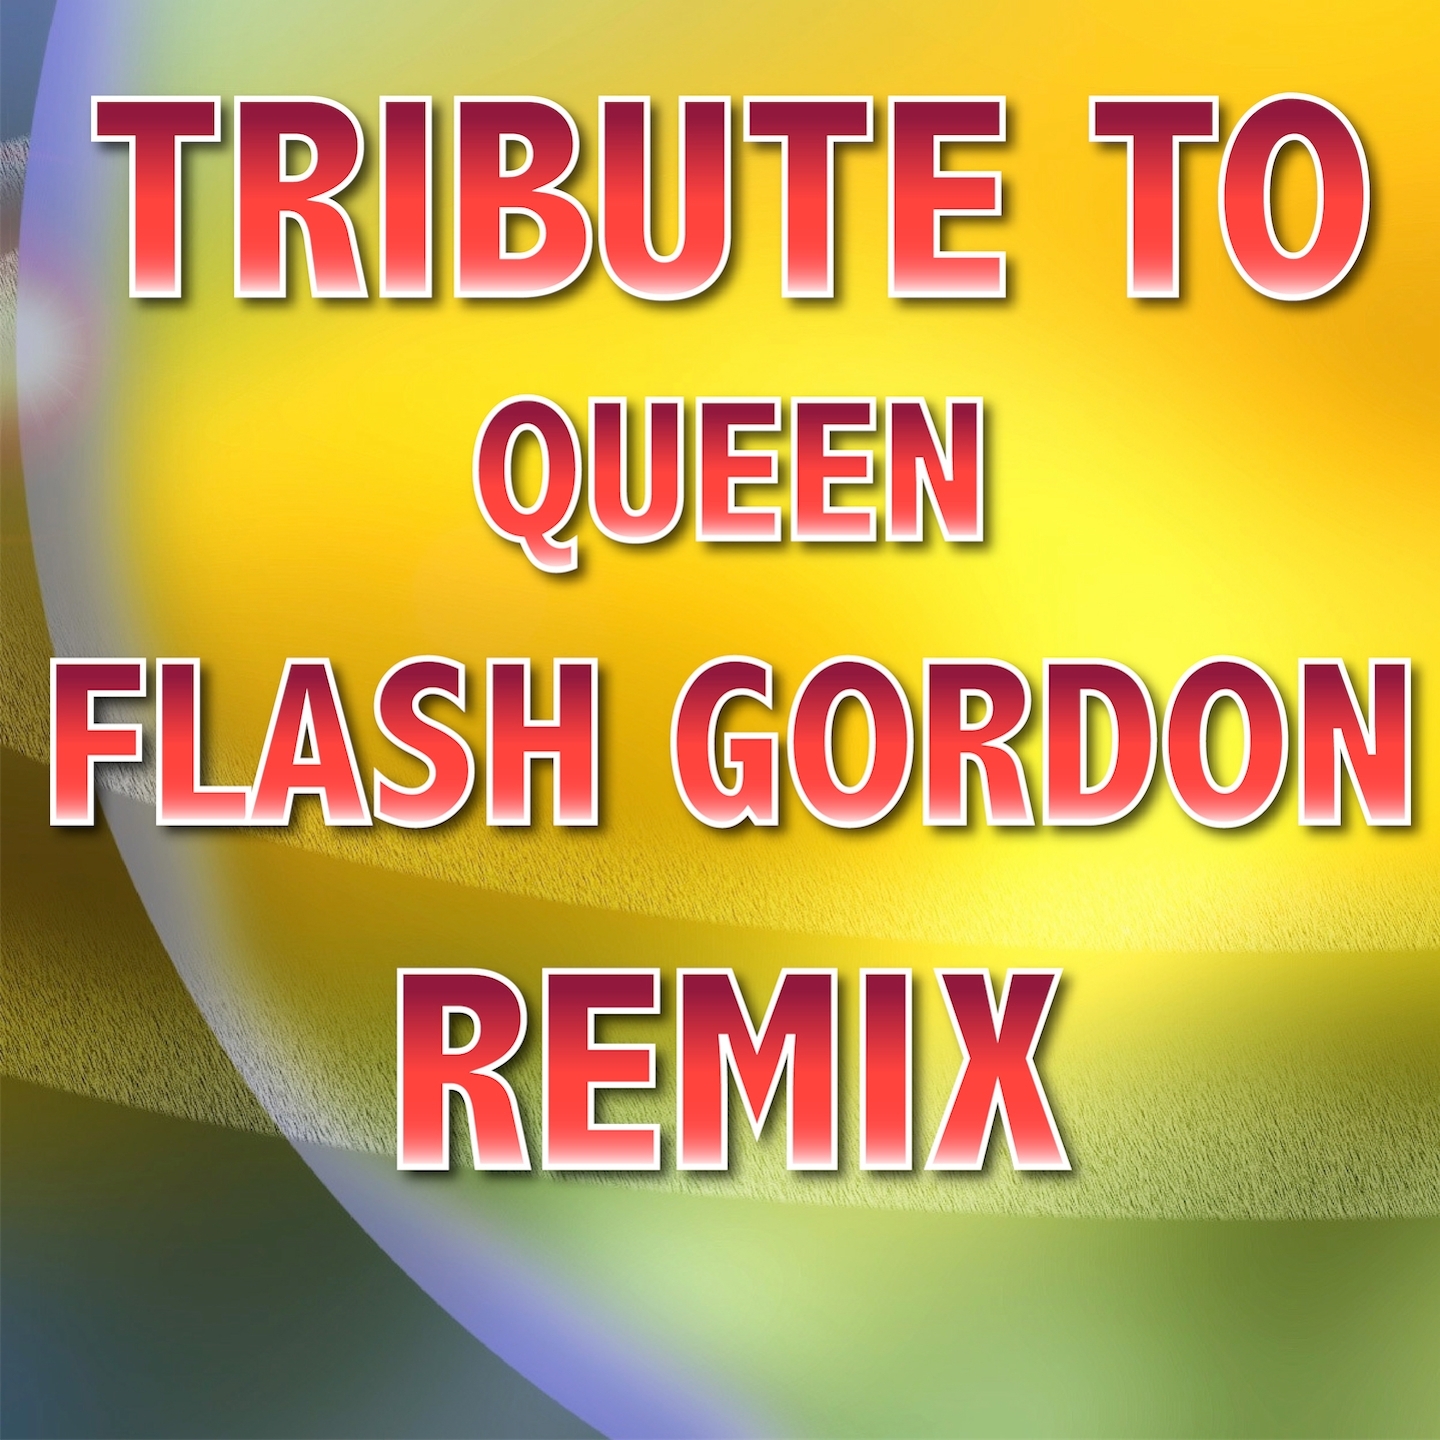 Flash Gordon: Tribute To Queen (From "Flash Gordon", Remix Julian B.)